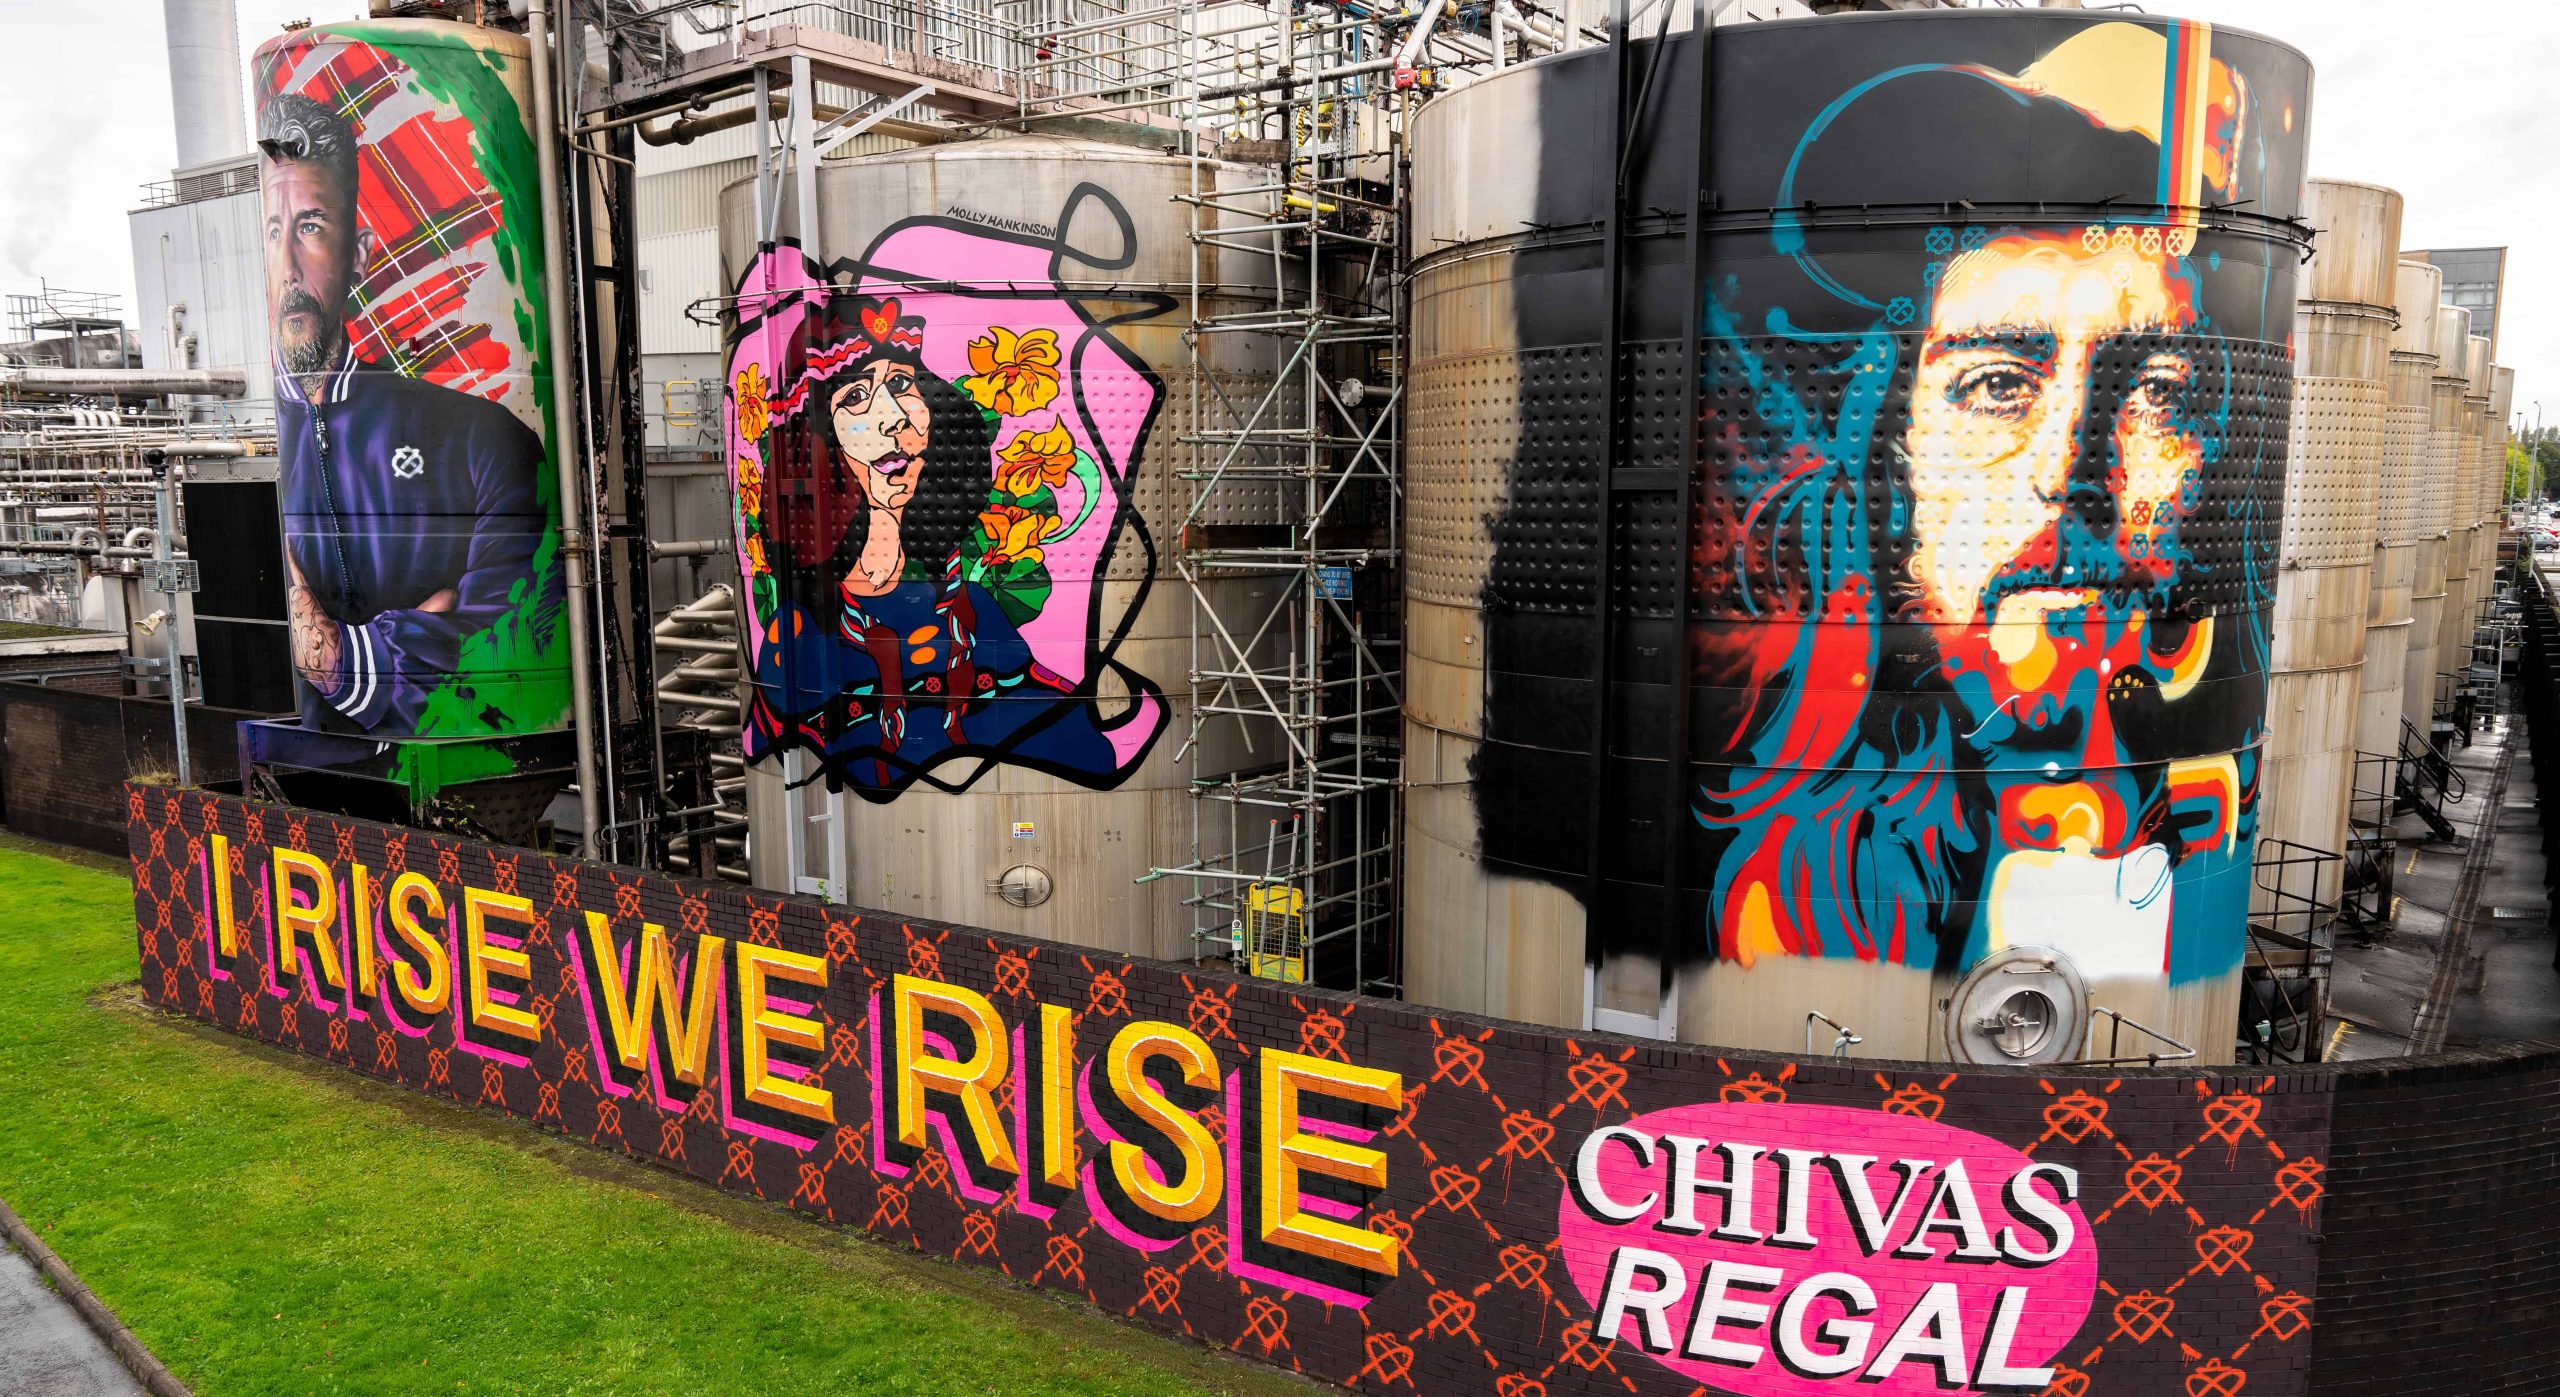 Chivas Regal Strathclyde Graffiti Art